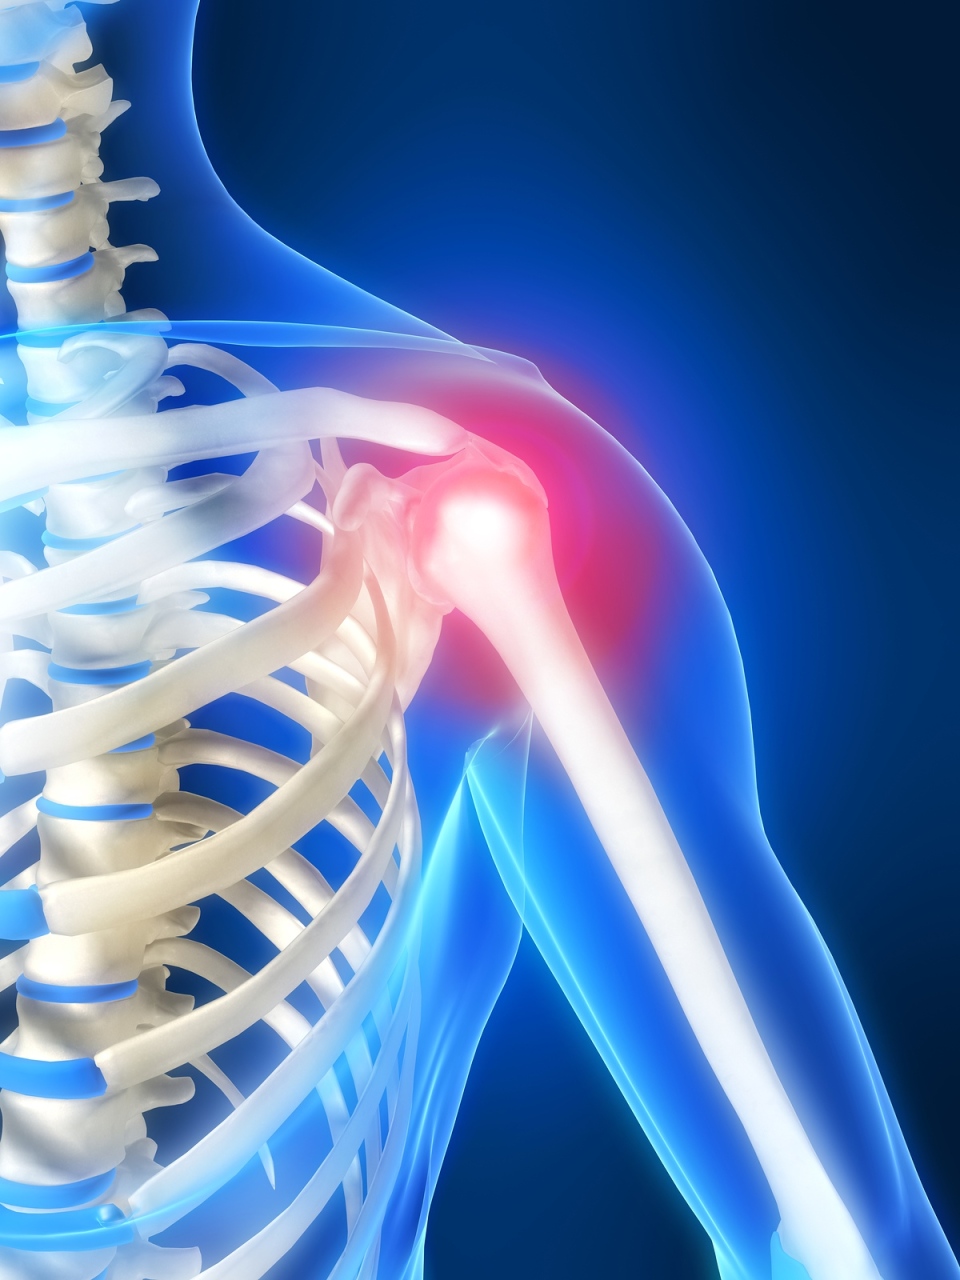 raumenų klajonių skausmas ir sąnarių gydymas klubo osteoartritas